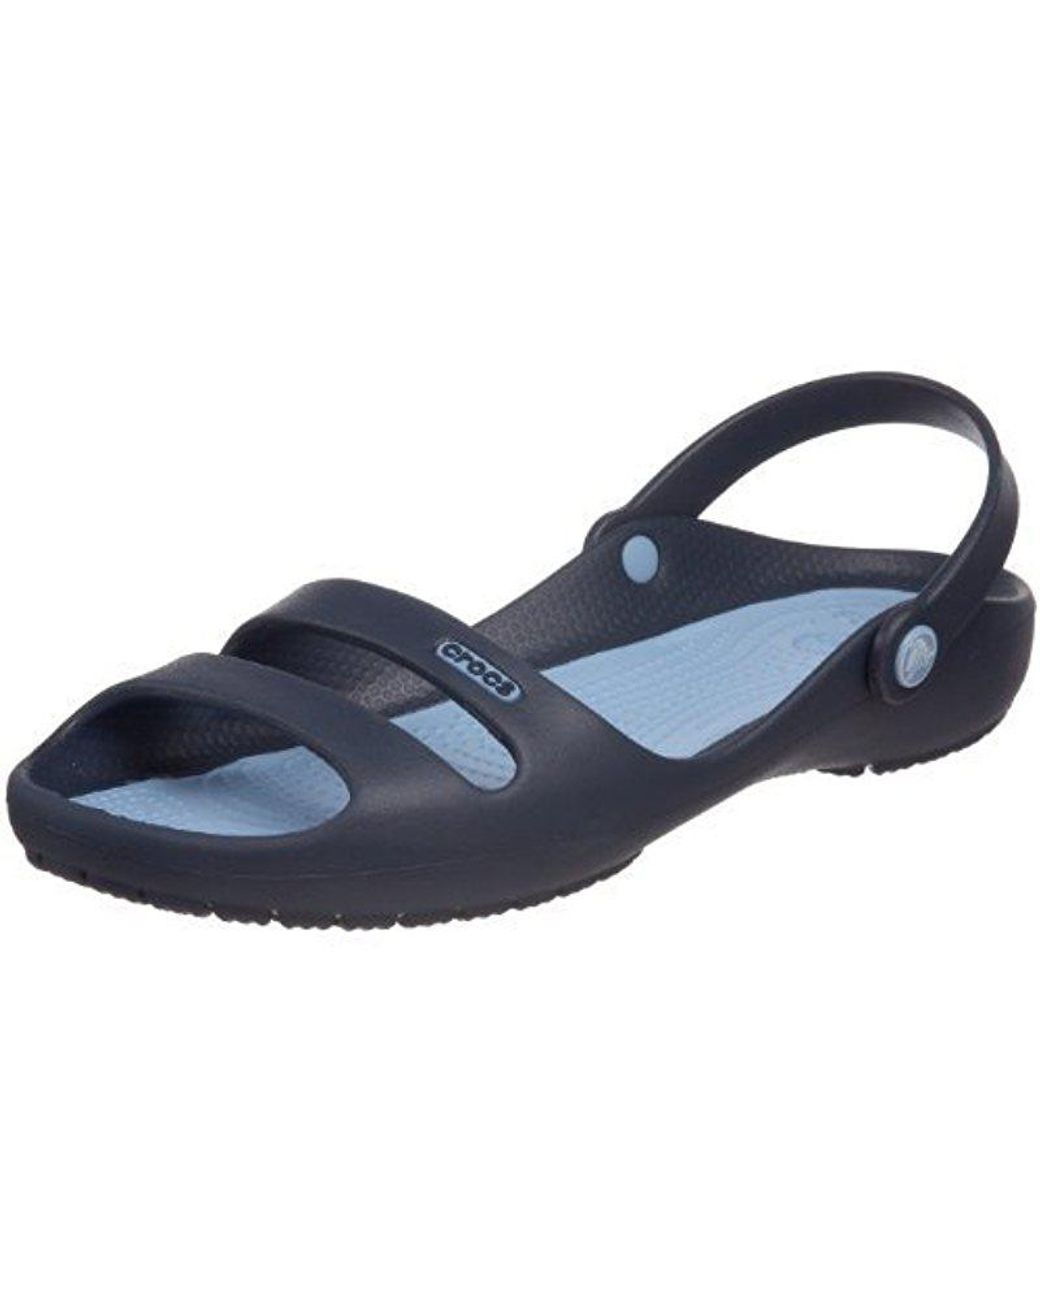 Crocs™ Cleo Ii Sandal in Navy/Light Blue (Blue) | Lyst